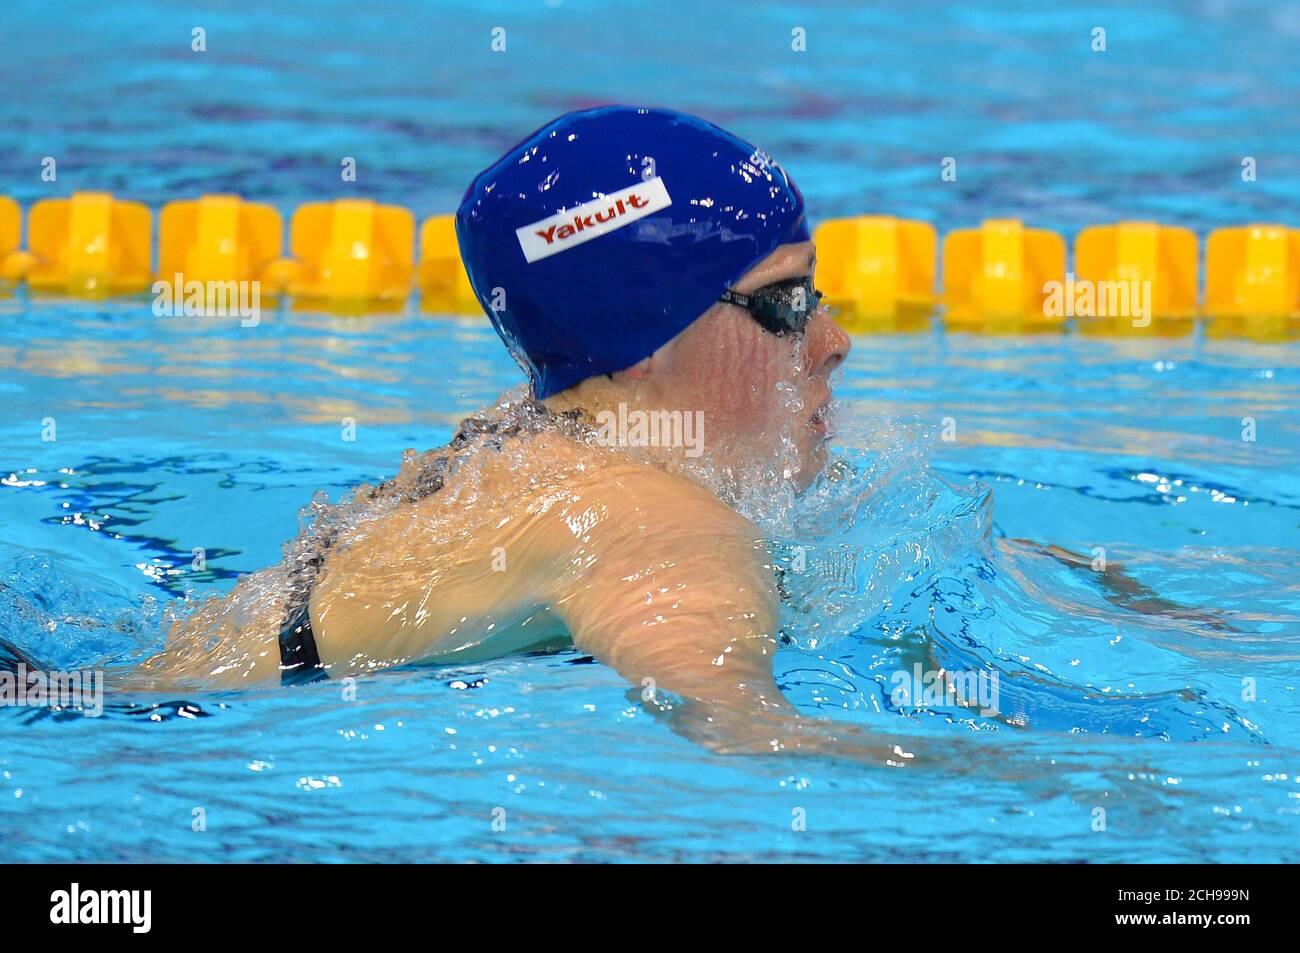 Siobhan-Marie O'Connor, en Grande-Bretagne, participe à la demi-finale féminine Medley de 200 m au cours du dixième jour des Championnats d'athlétisme européens au London Aquatics Centre, à Stratford. Banque D'Images